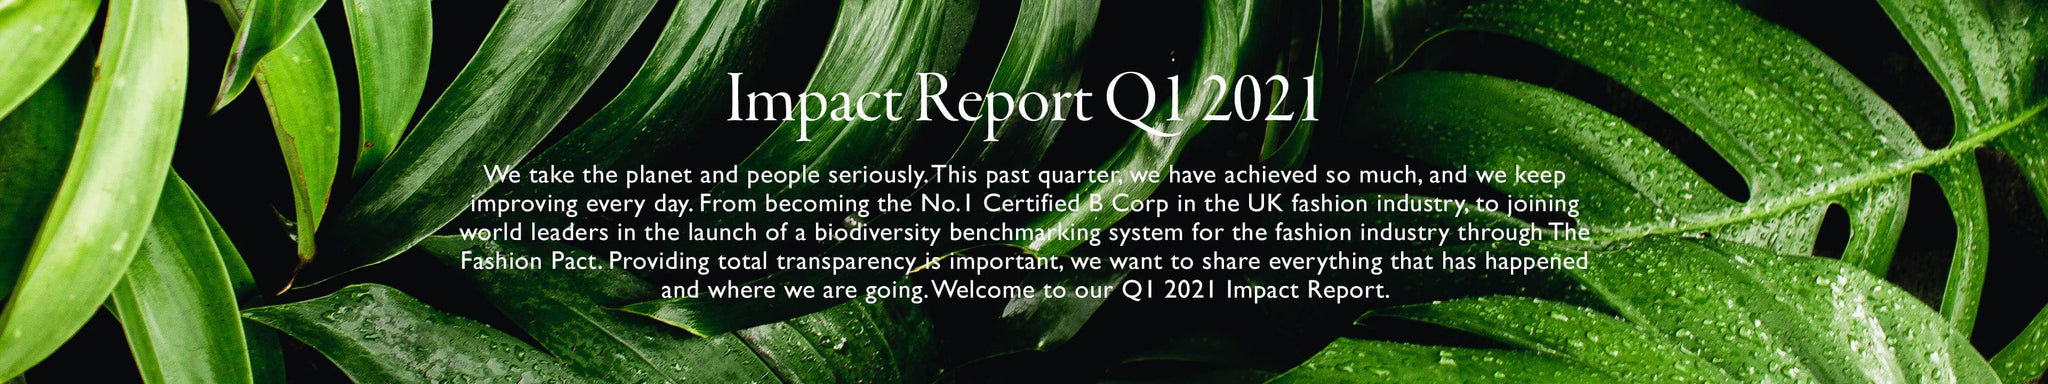 Impact Report 2021 Q1